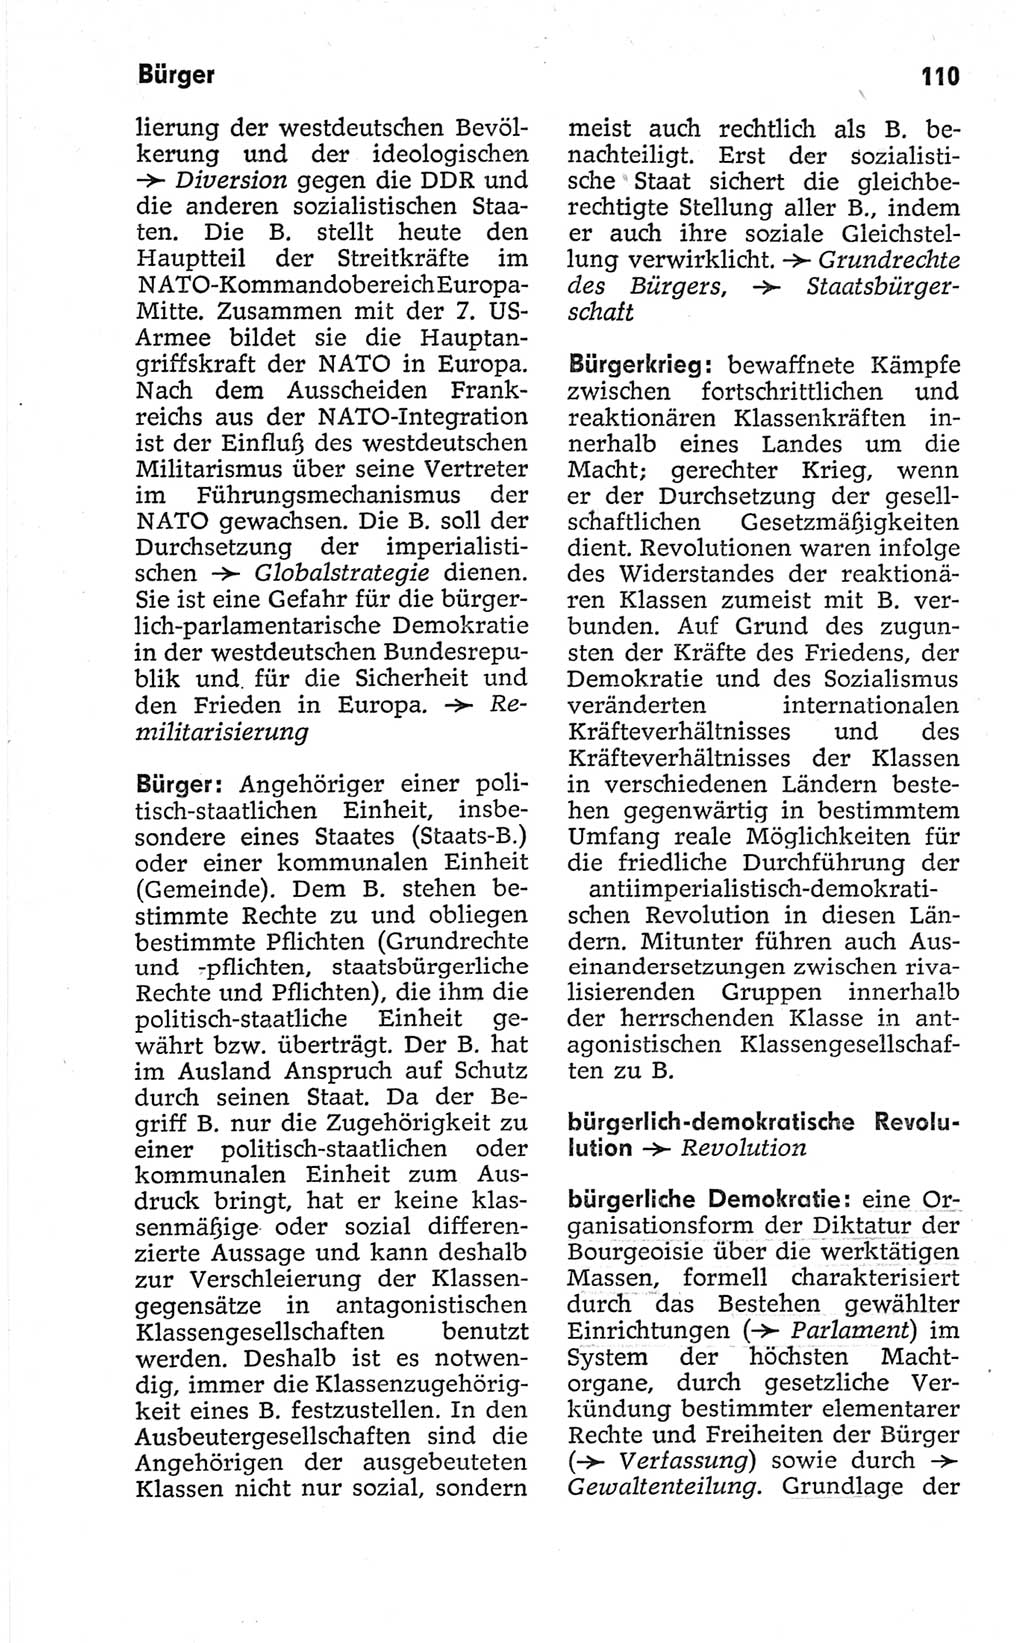 Kleines politisches Wörterbuch [Deutsche Demokratische Republik (DDR)] 1967, Seite 110 (Kl. pol. Wb. DDR 1967, S. 110)